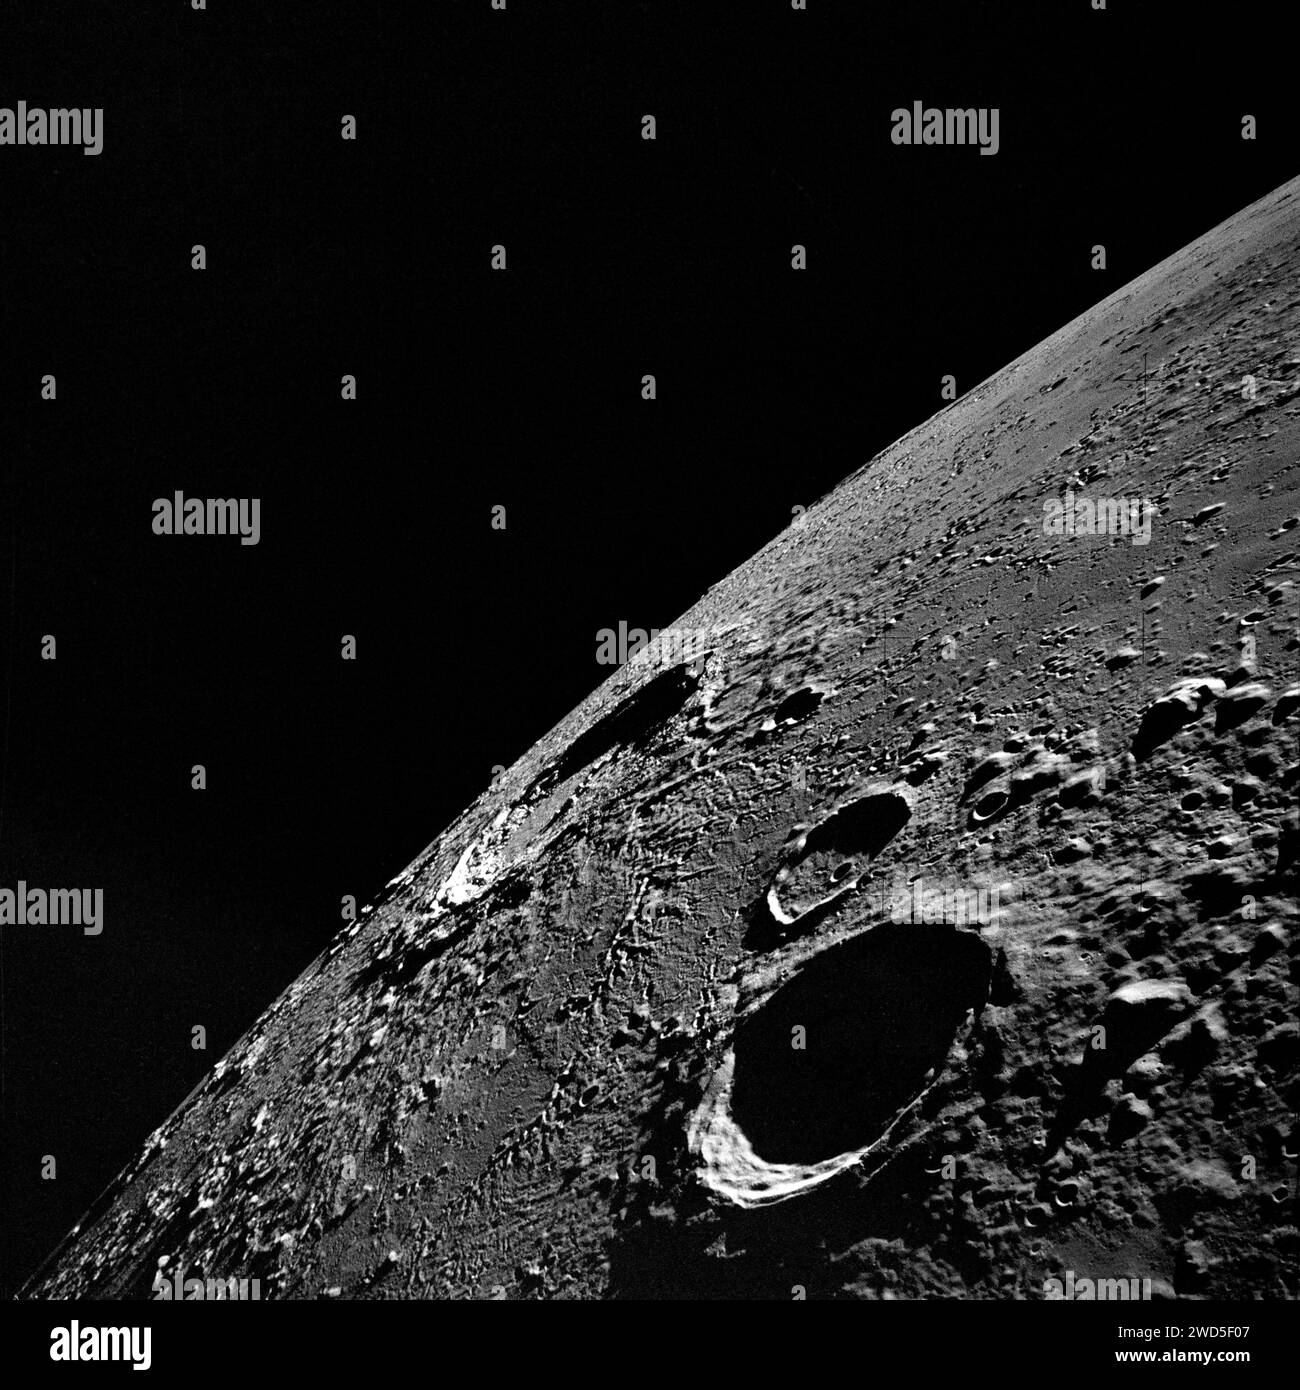 Vista ad alto angolo del lato sinistro lunare guardando a nord-est verso il cratere Copernicus (al centro vicino all'orizzonte), il cratere Reinhold (in primo piano) e il cratere Reinhold B (sopra Reinhold), come fotografato dalla sonda Apollo 12, NASA, 19 novembre 1969 Foto Stock